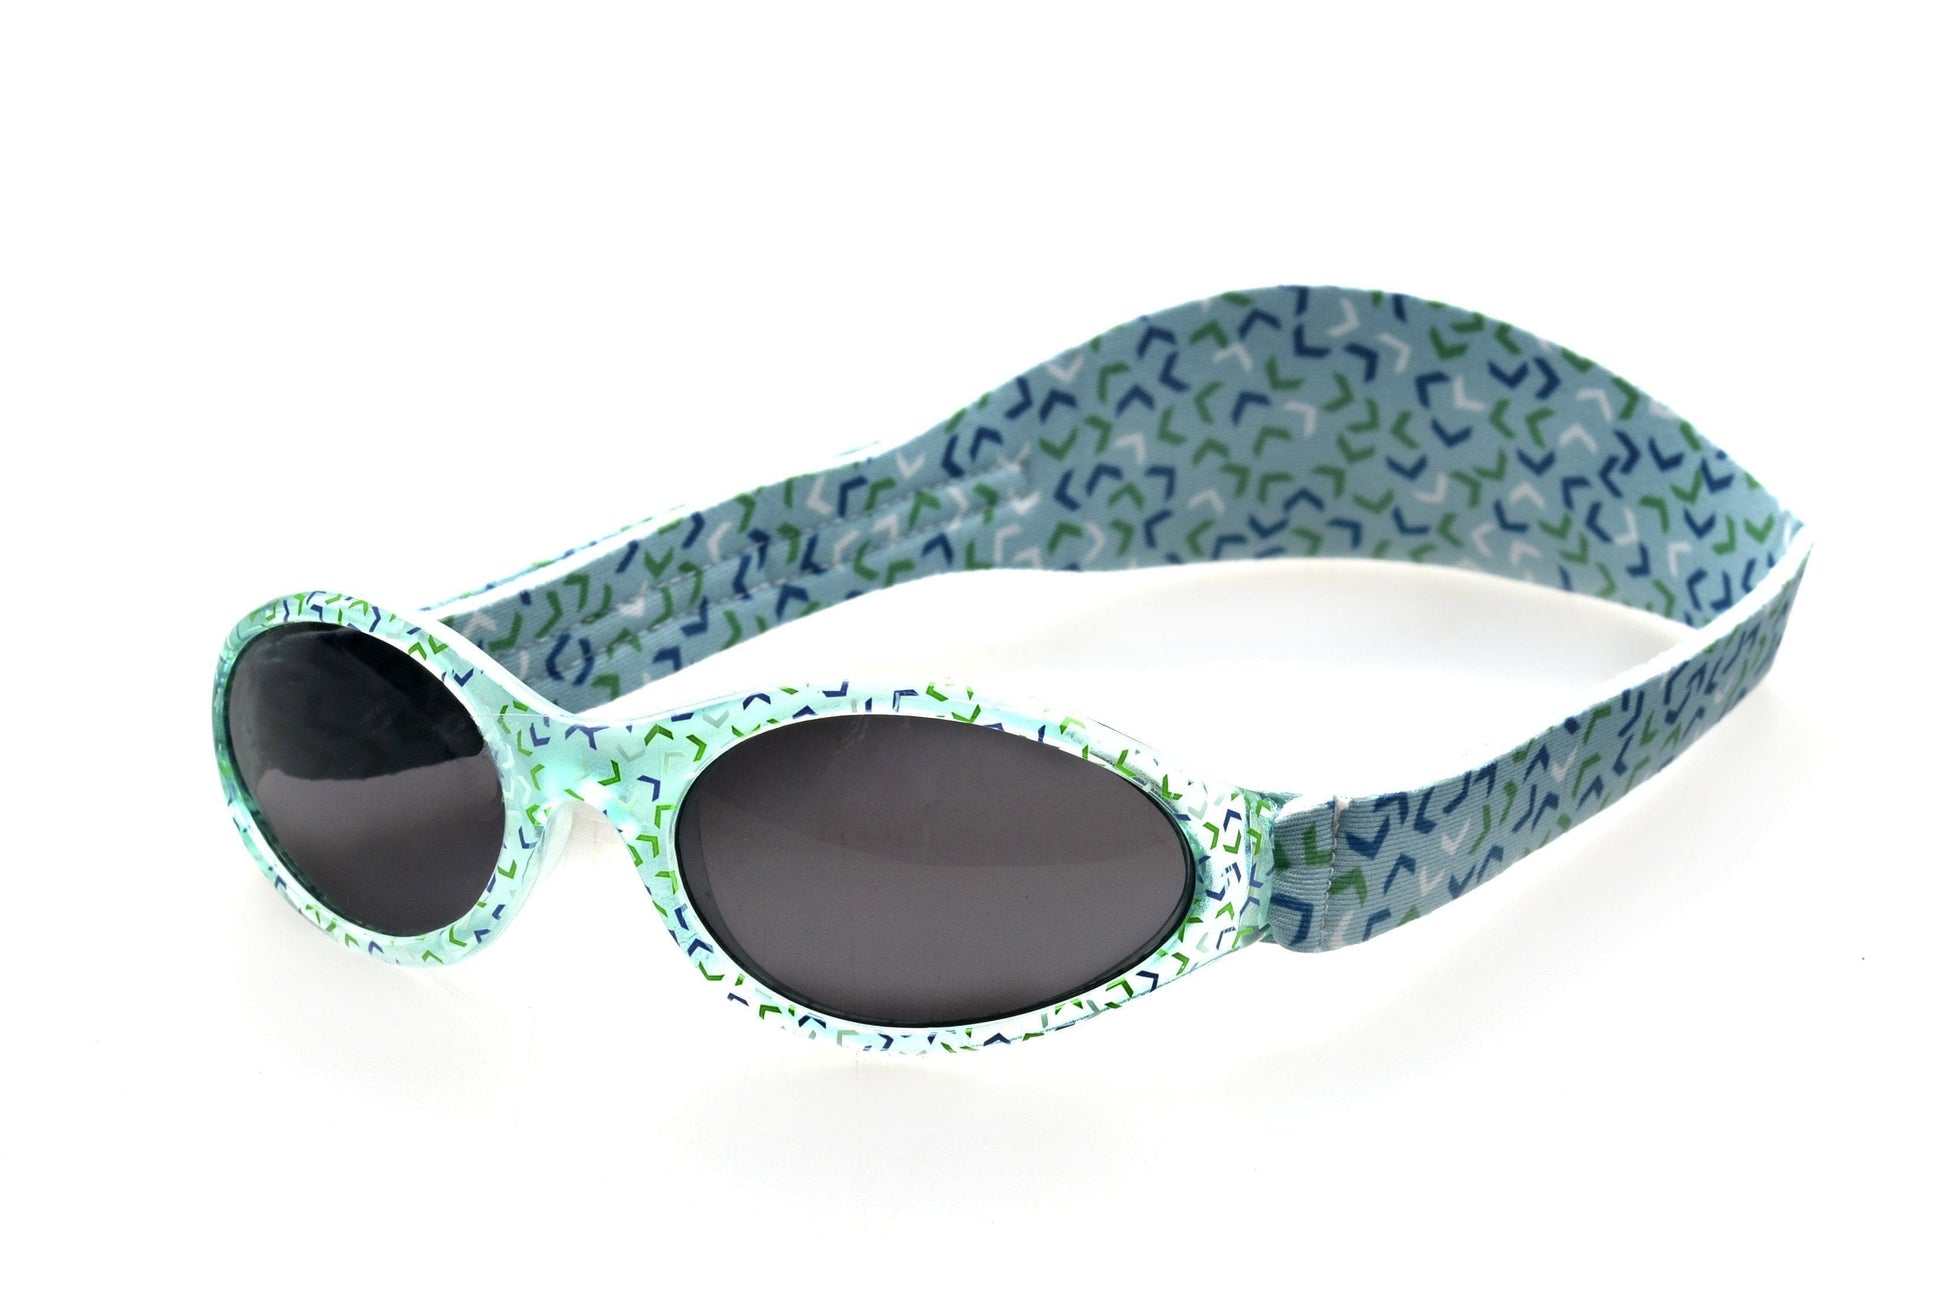 BANZ Sunglasses Toddler Sunglasses - Bubzee Polarized Wrap Around Confetti Green